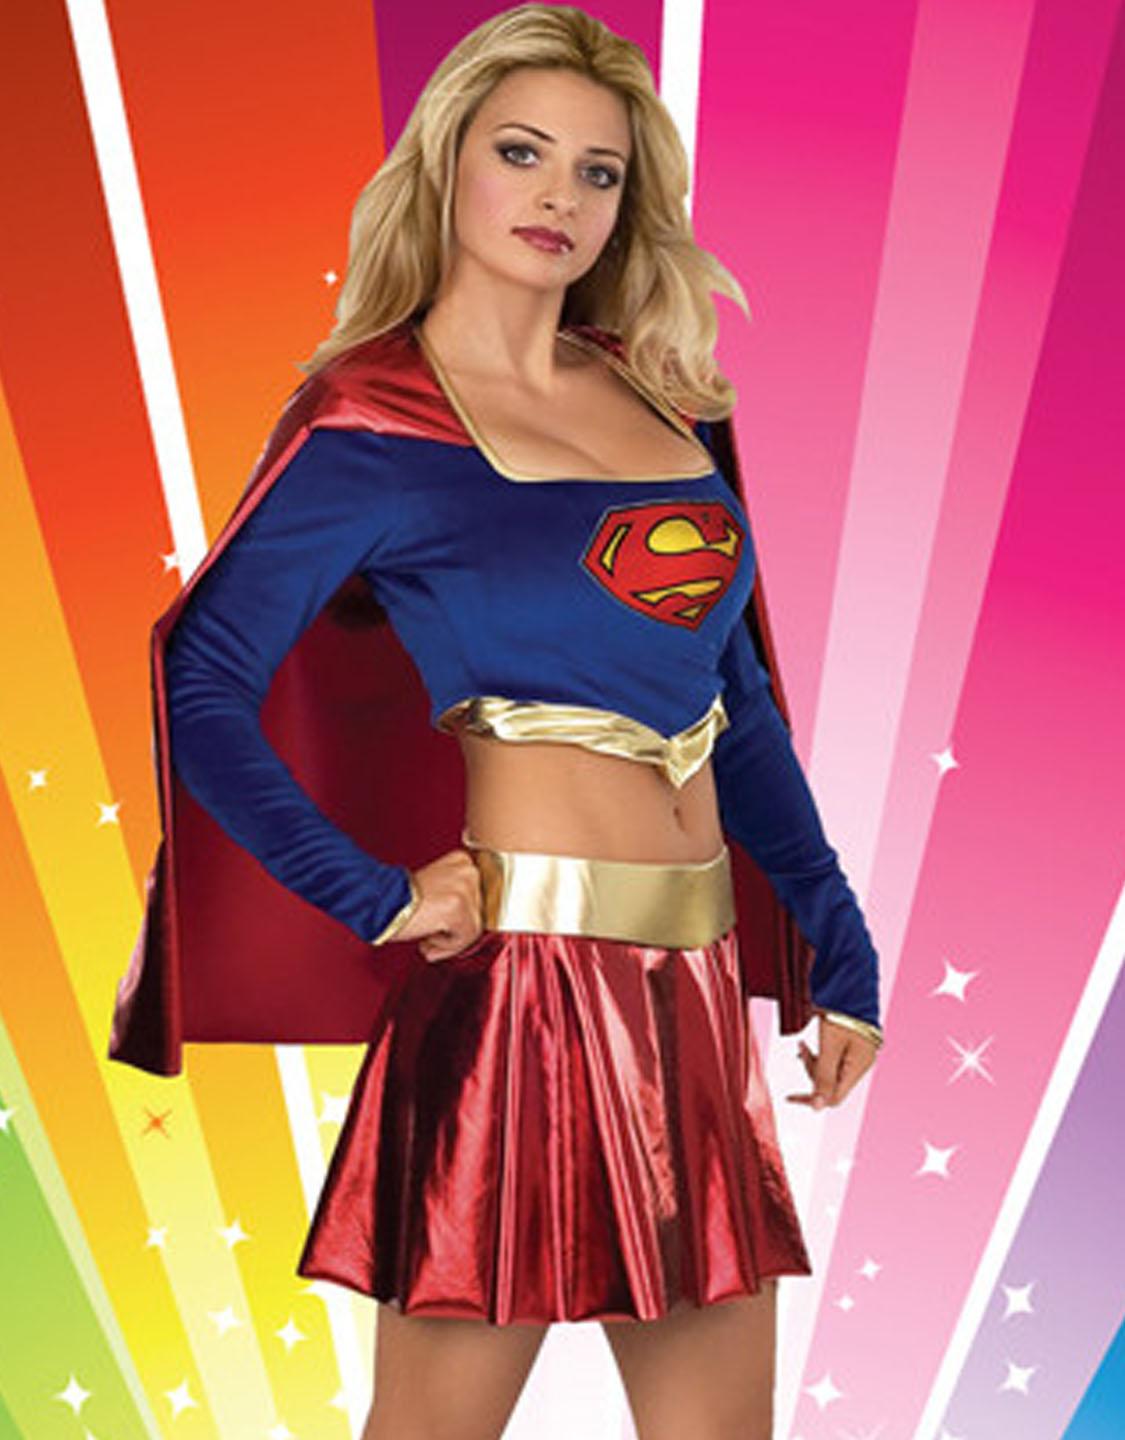 Sexy Super Girl Costume Telegraph 3206